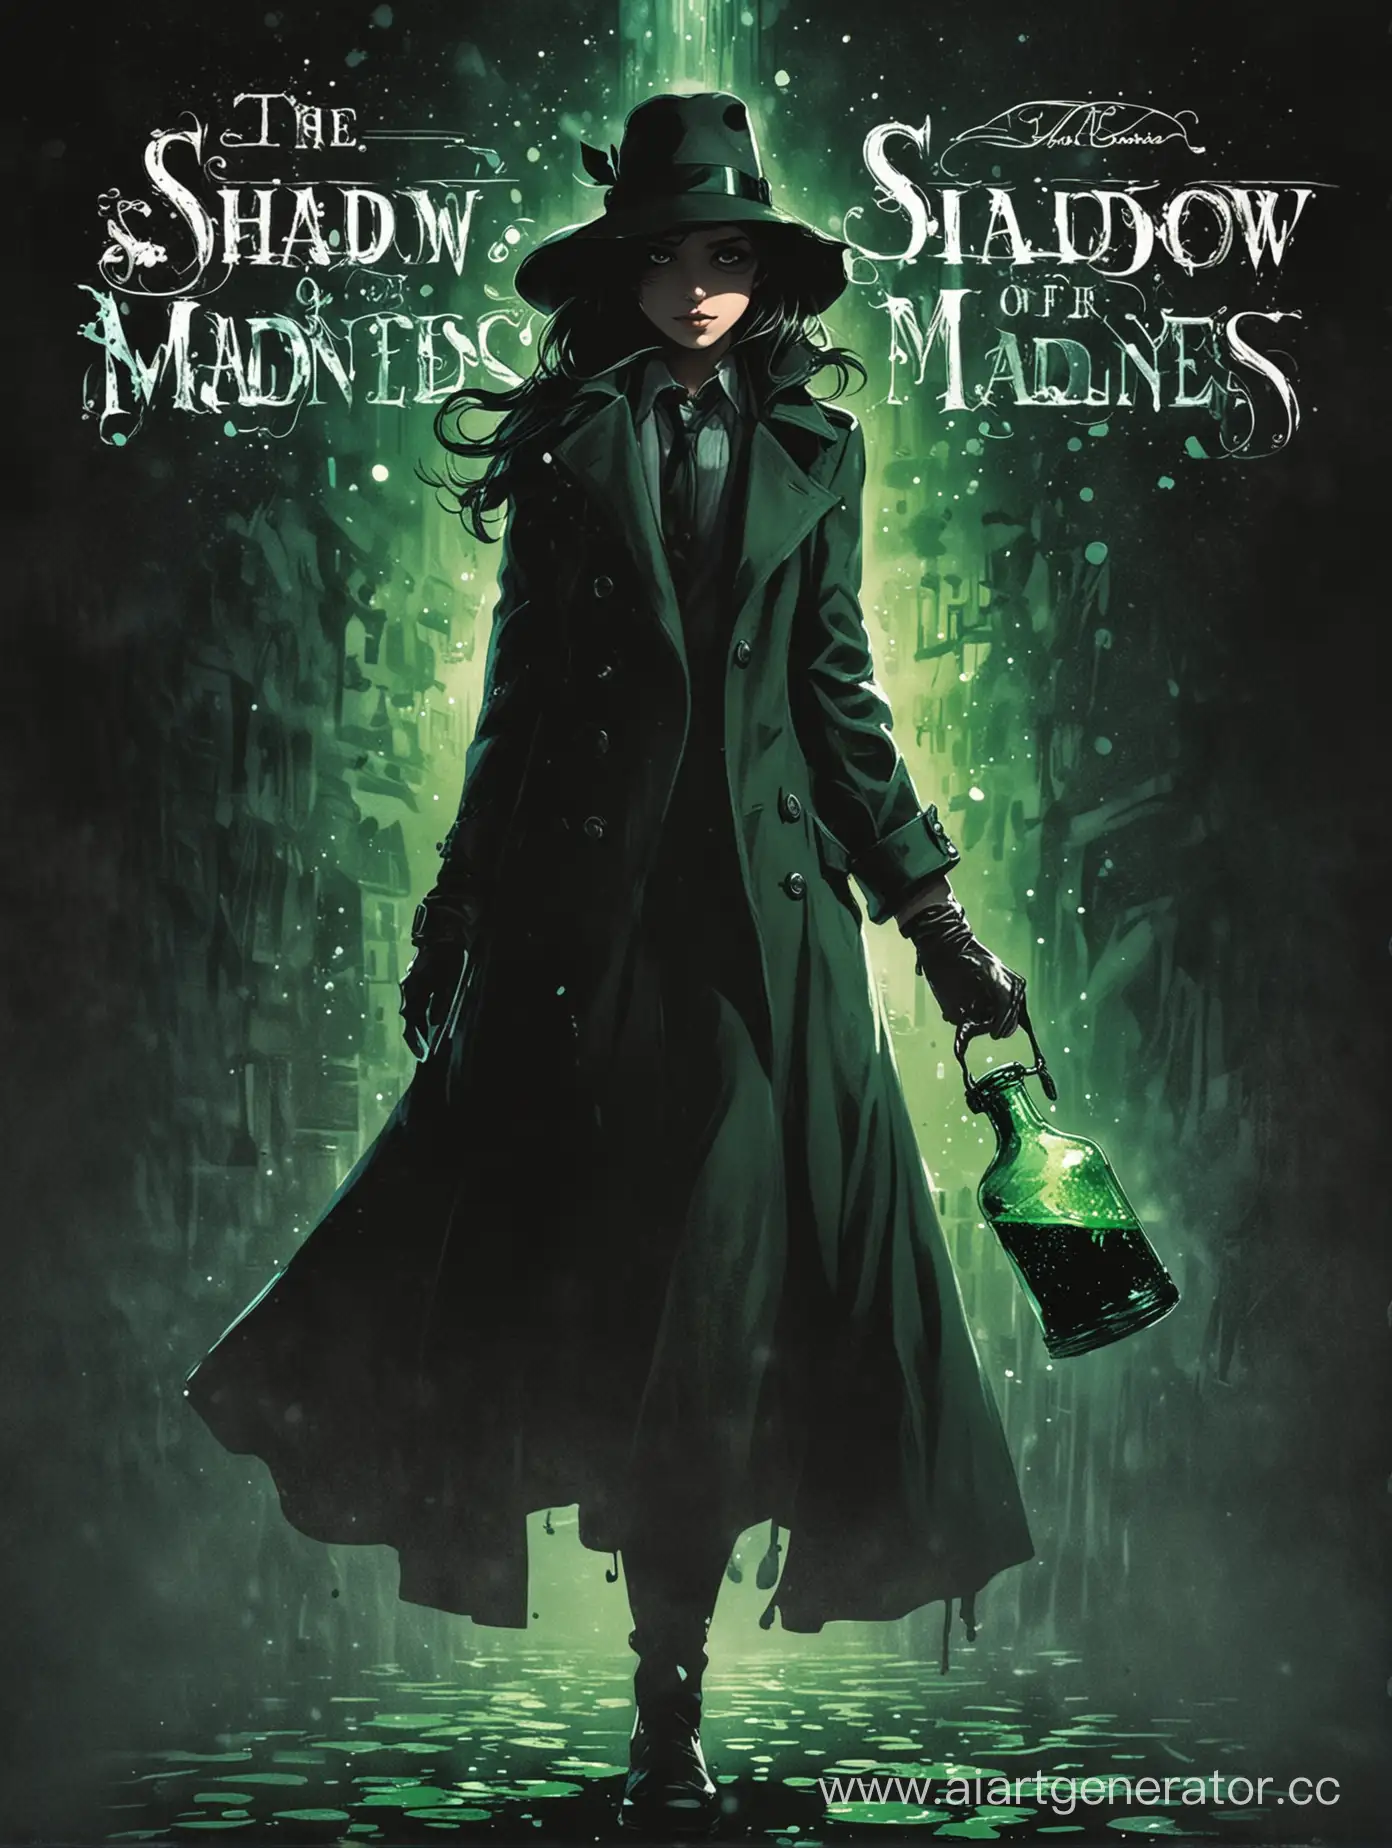 Обложка для книги: Тень Безумия, детектив девушка лет 25-30 стоит и видит черную тень держащую в руках колбу с зелёной сверкающей жидкостью